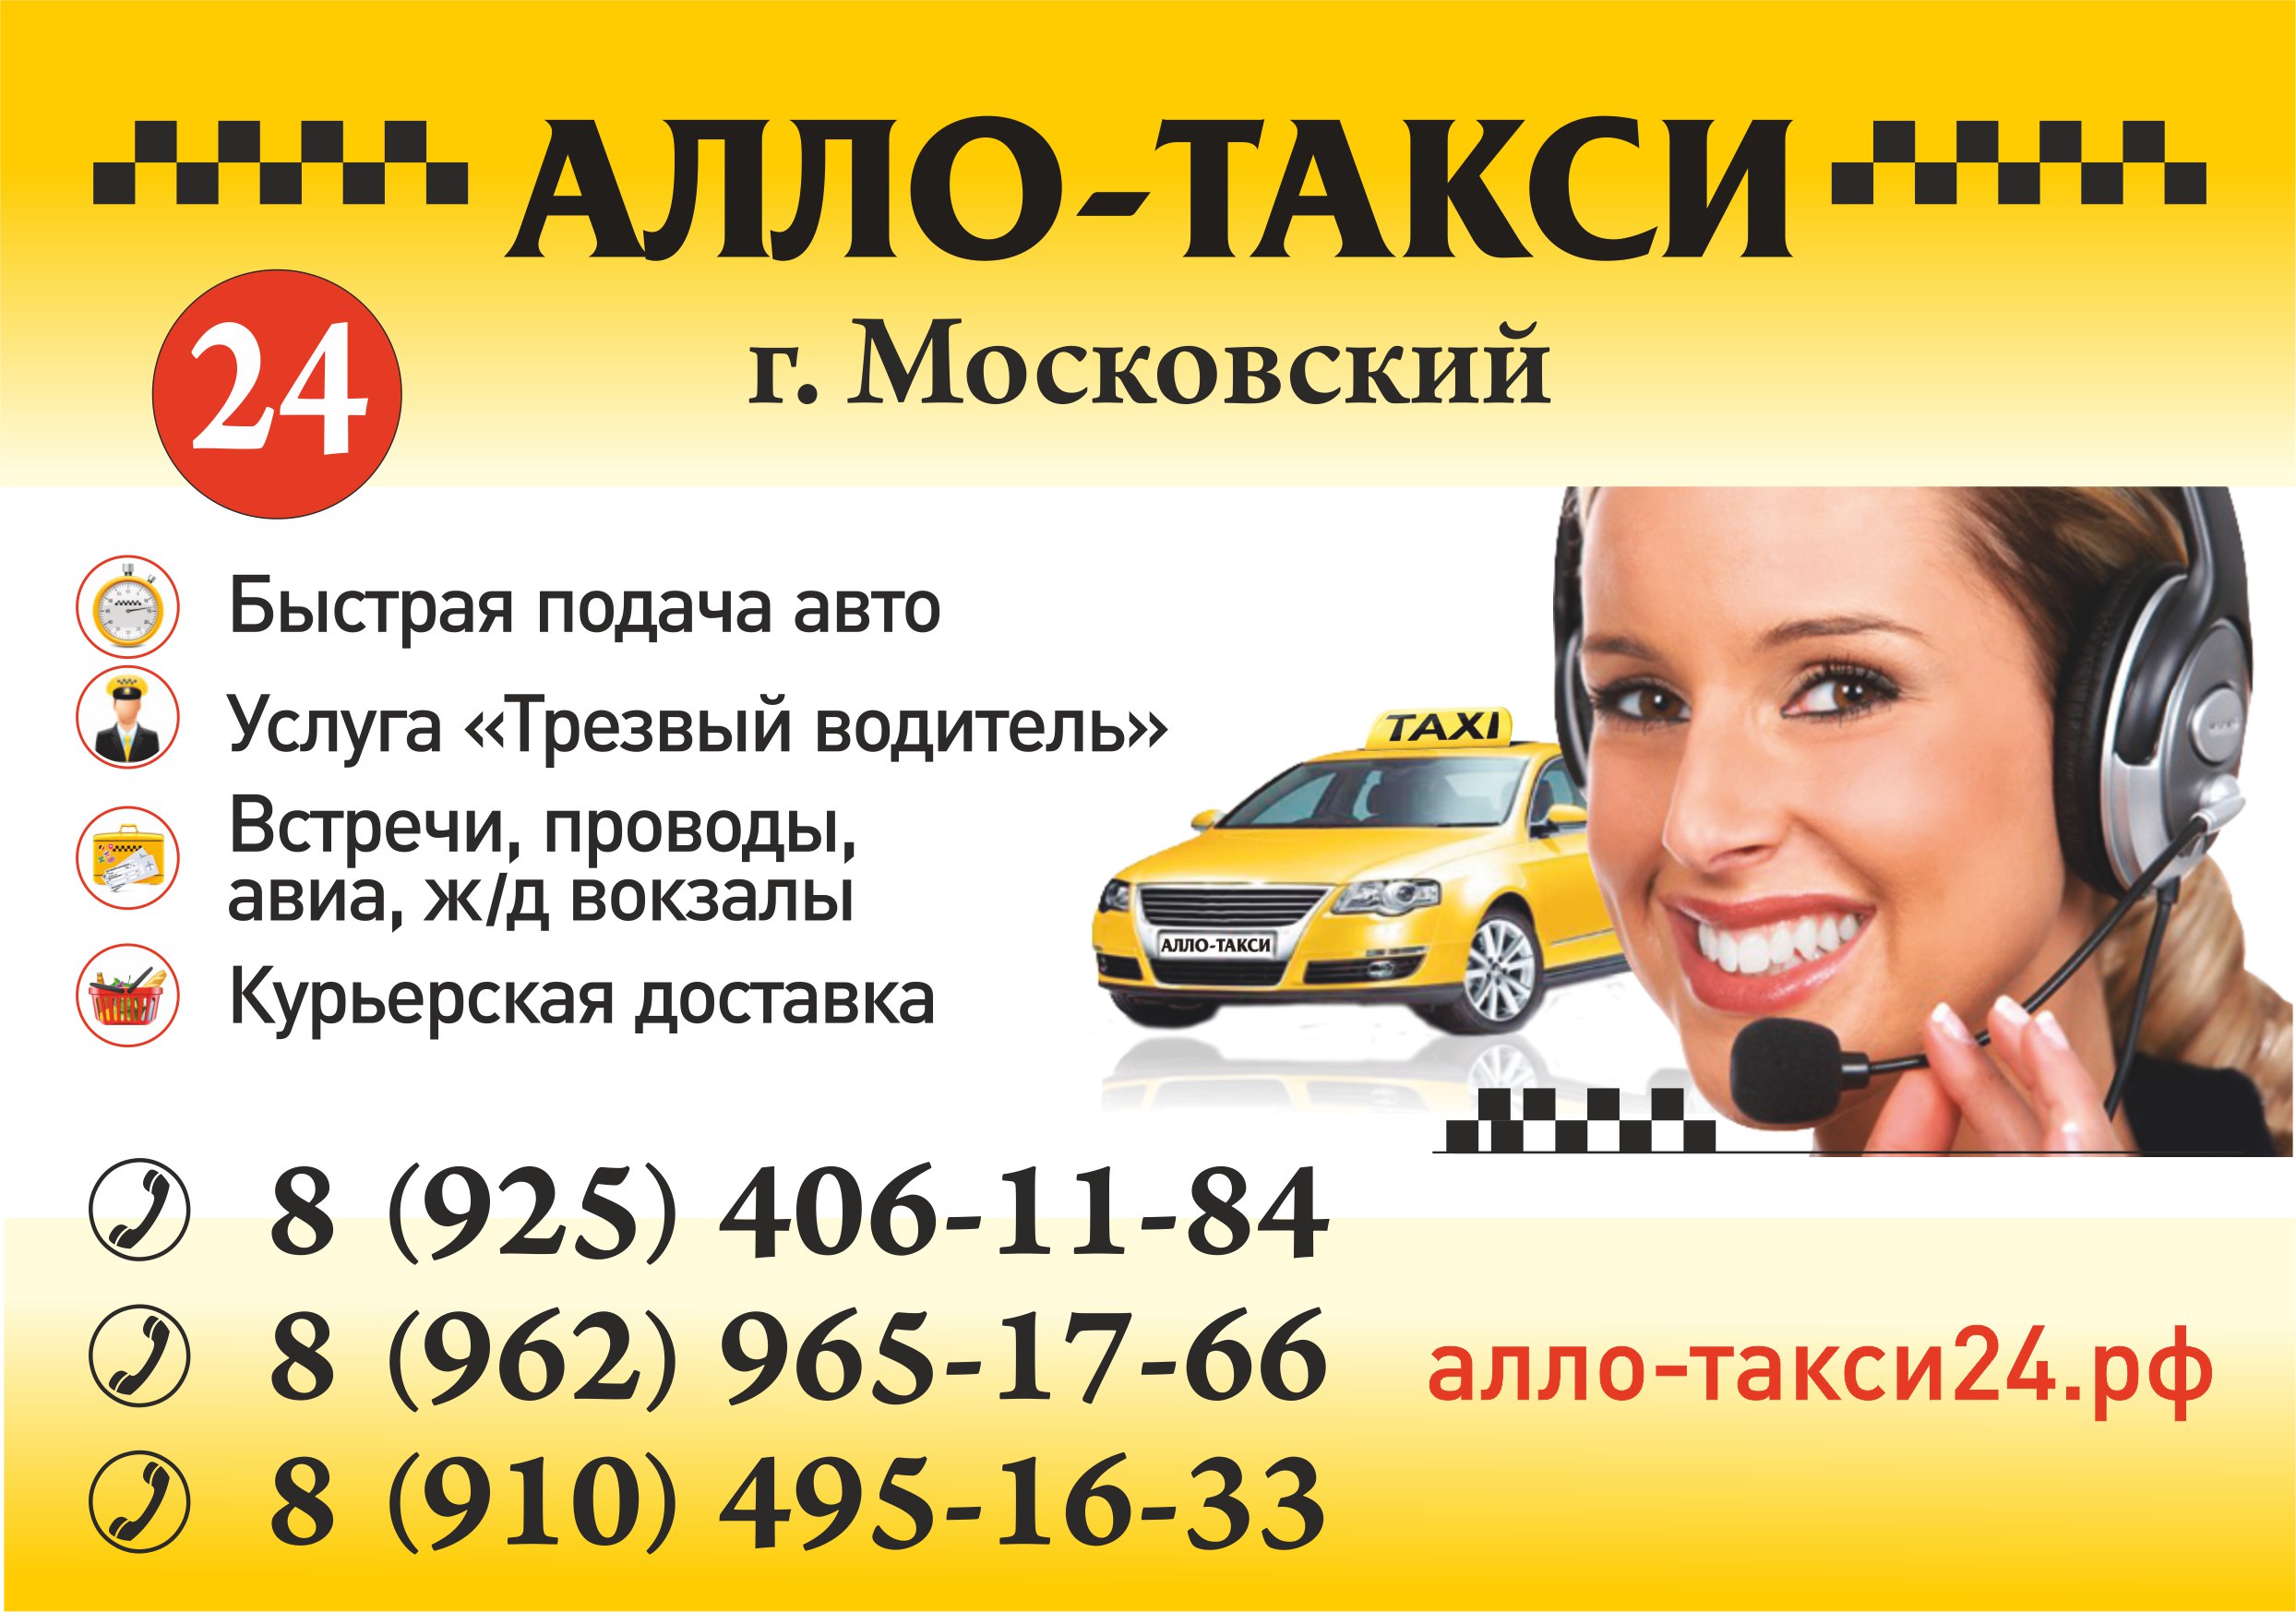 Такси щелково телефоны. Номер такси. Номер телефона такси. Номер телефона таксиста. Номера таксистов.